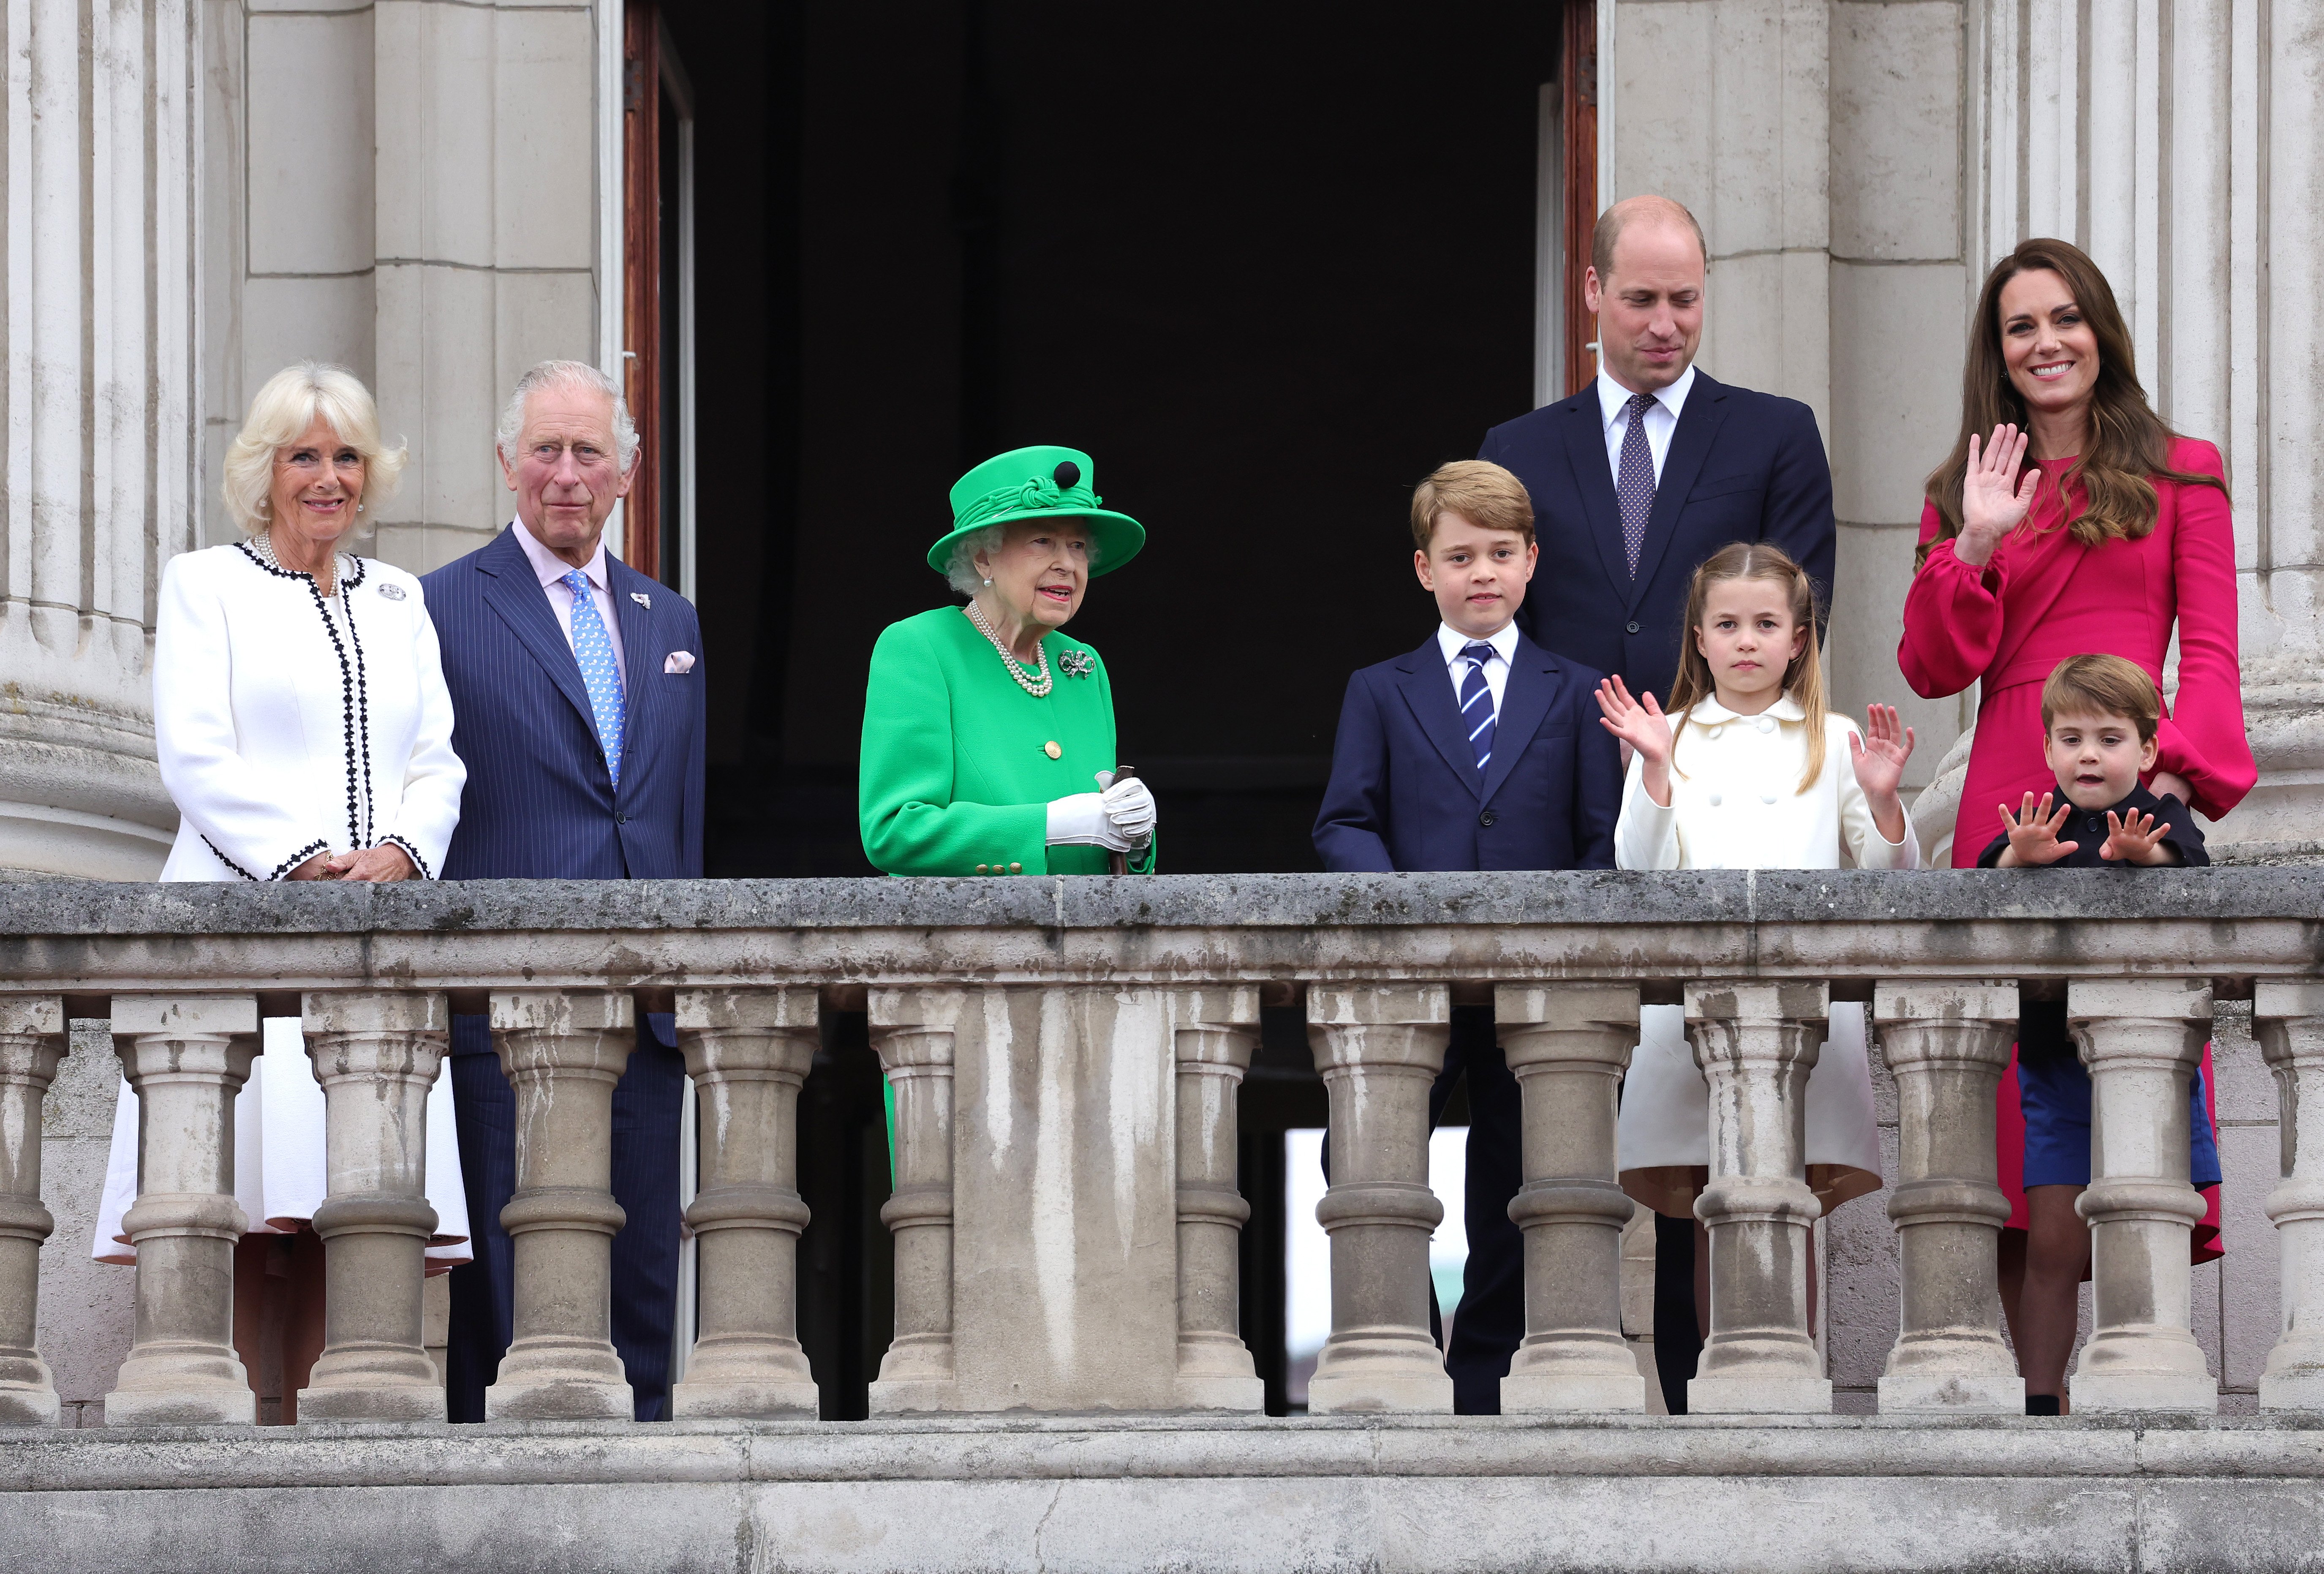 Camilla, duquesa de Cornualles, el príncipe Charles, la reina Elizabeth II, el príncipe George, el príncipe William, la princesa Charlotte, Catherine, duquesa de Cambridge y el príncipe Louis en el balcón del Palacio de Buckingham el 05 de junio de 2022 en Londres, Inglaterra. | Foto: Getty Images